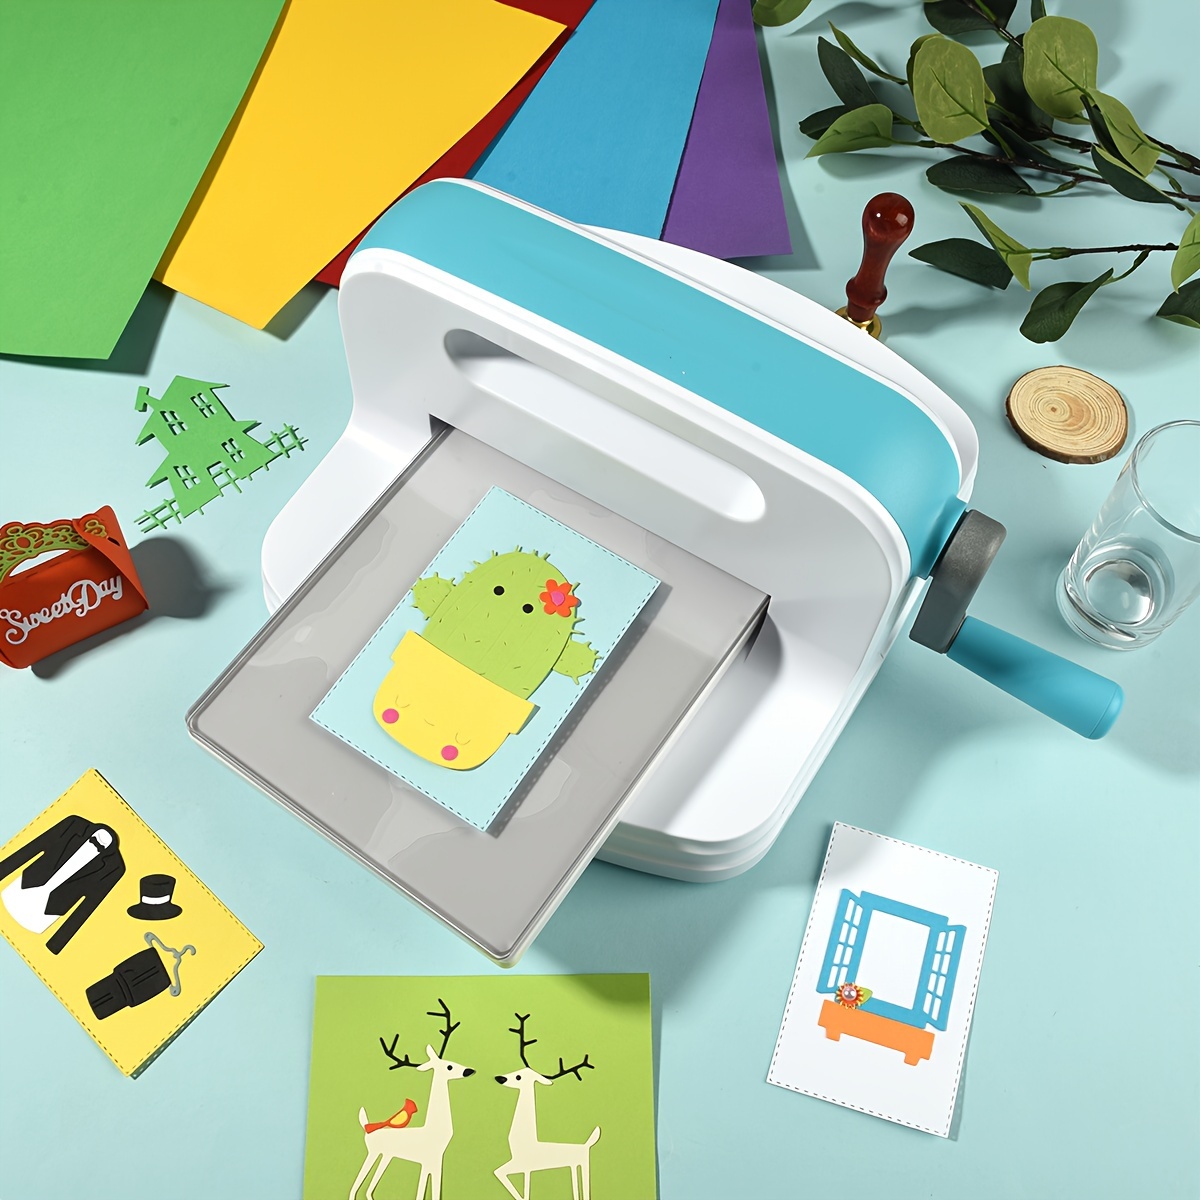 

1pc Die-cut Embossing Machine A5 Scrapbook Paper Cutter Die-cutting Machine For Card Making And Paper Crafts